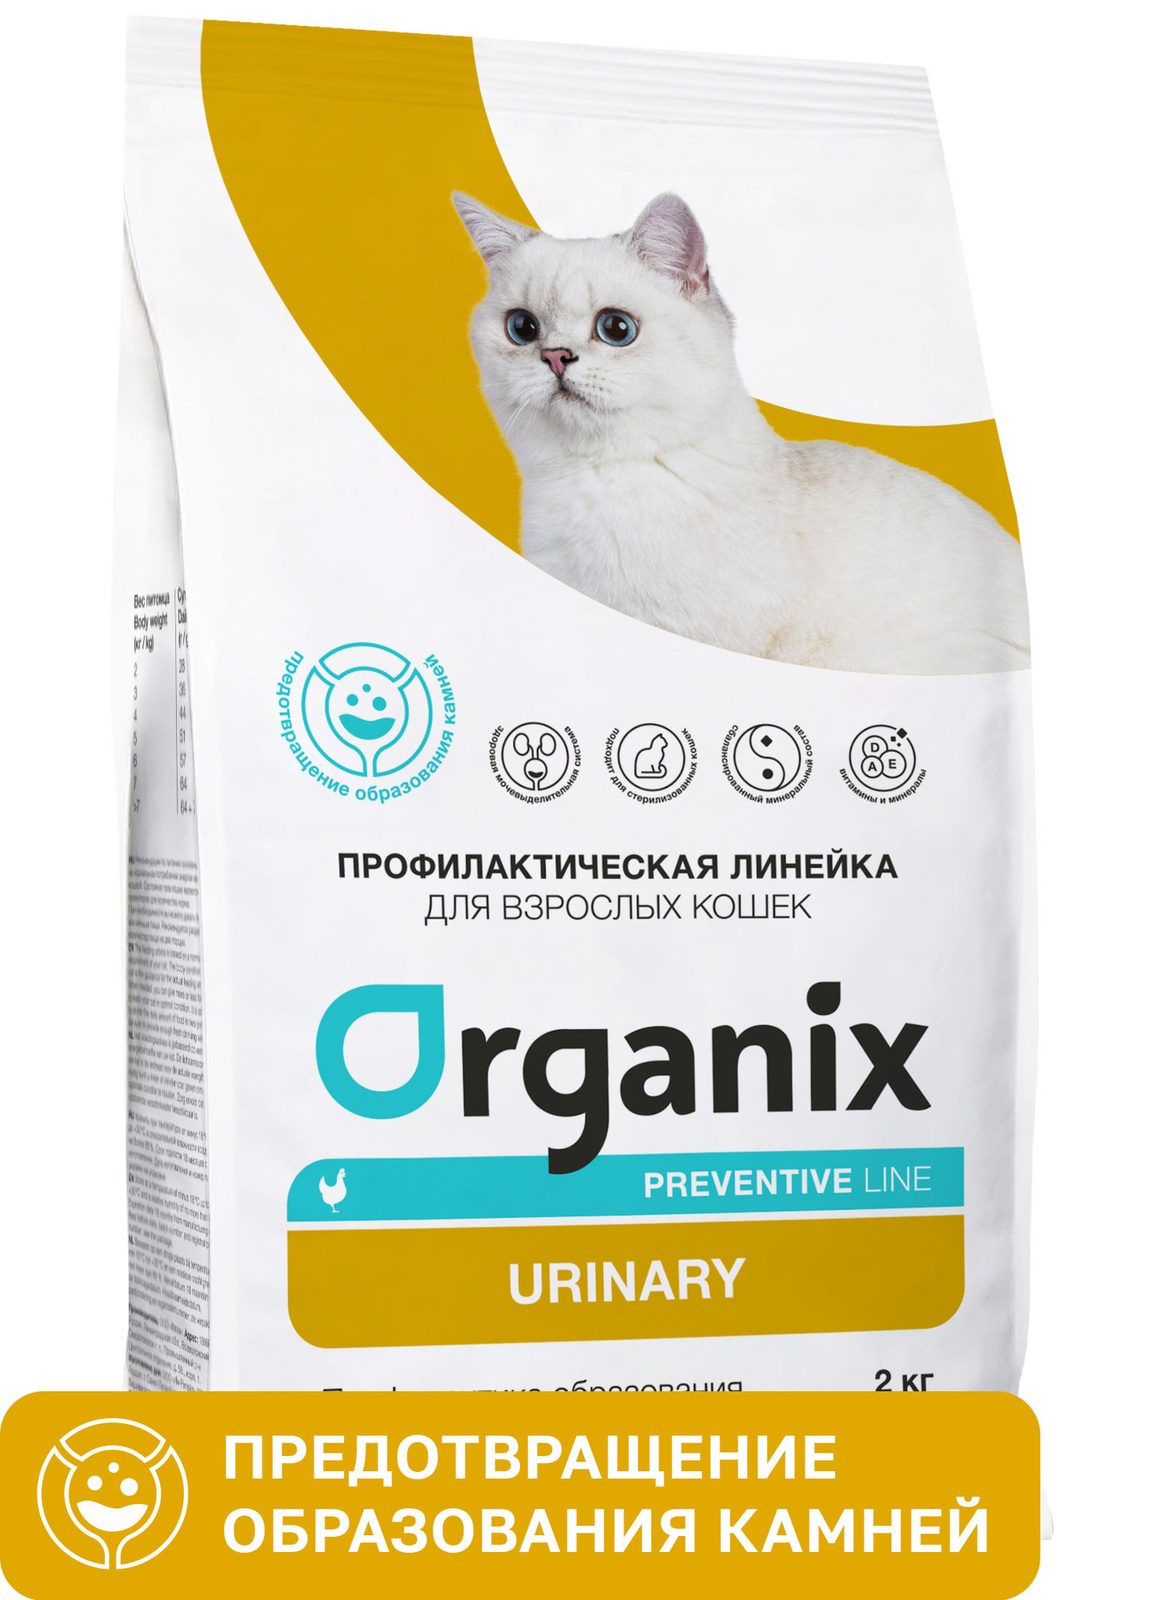 Organix Preventive Line urinary сухой корм для кошек 